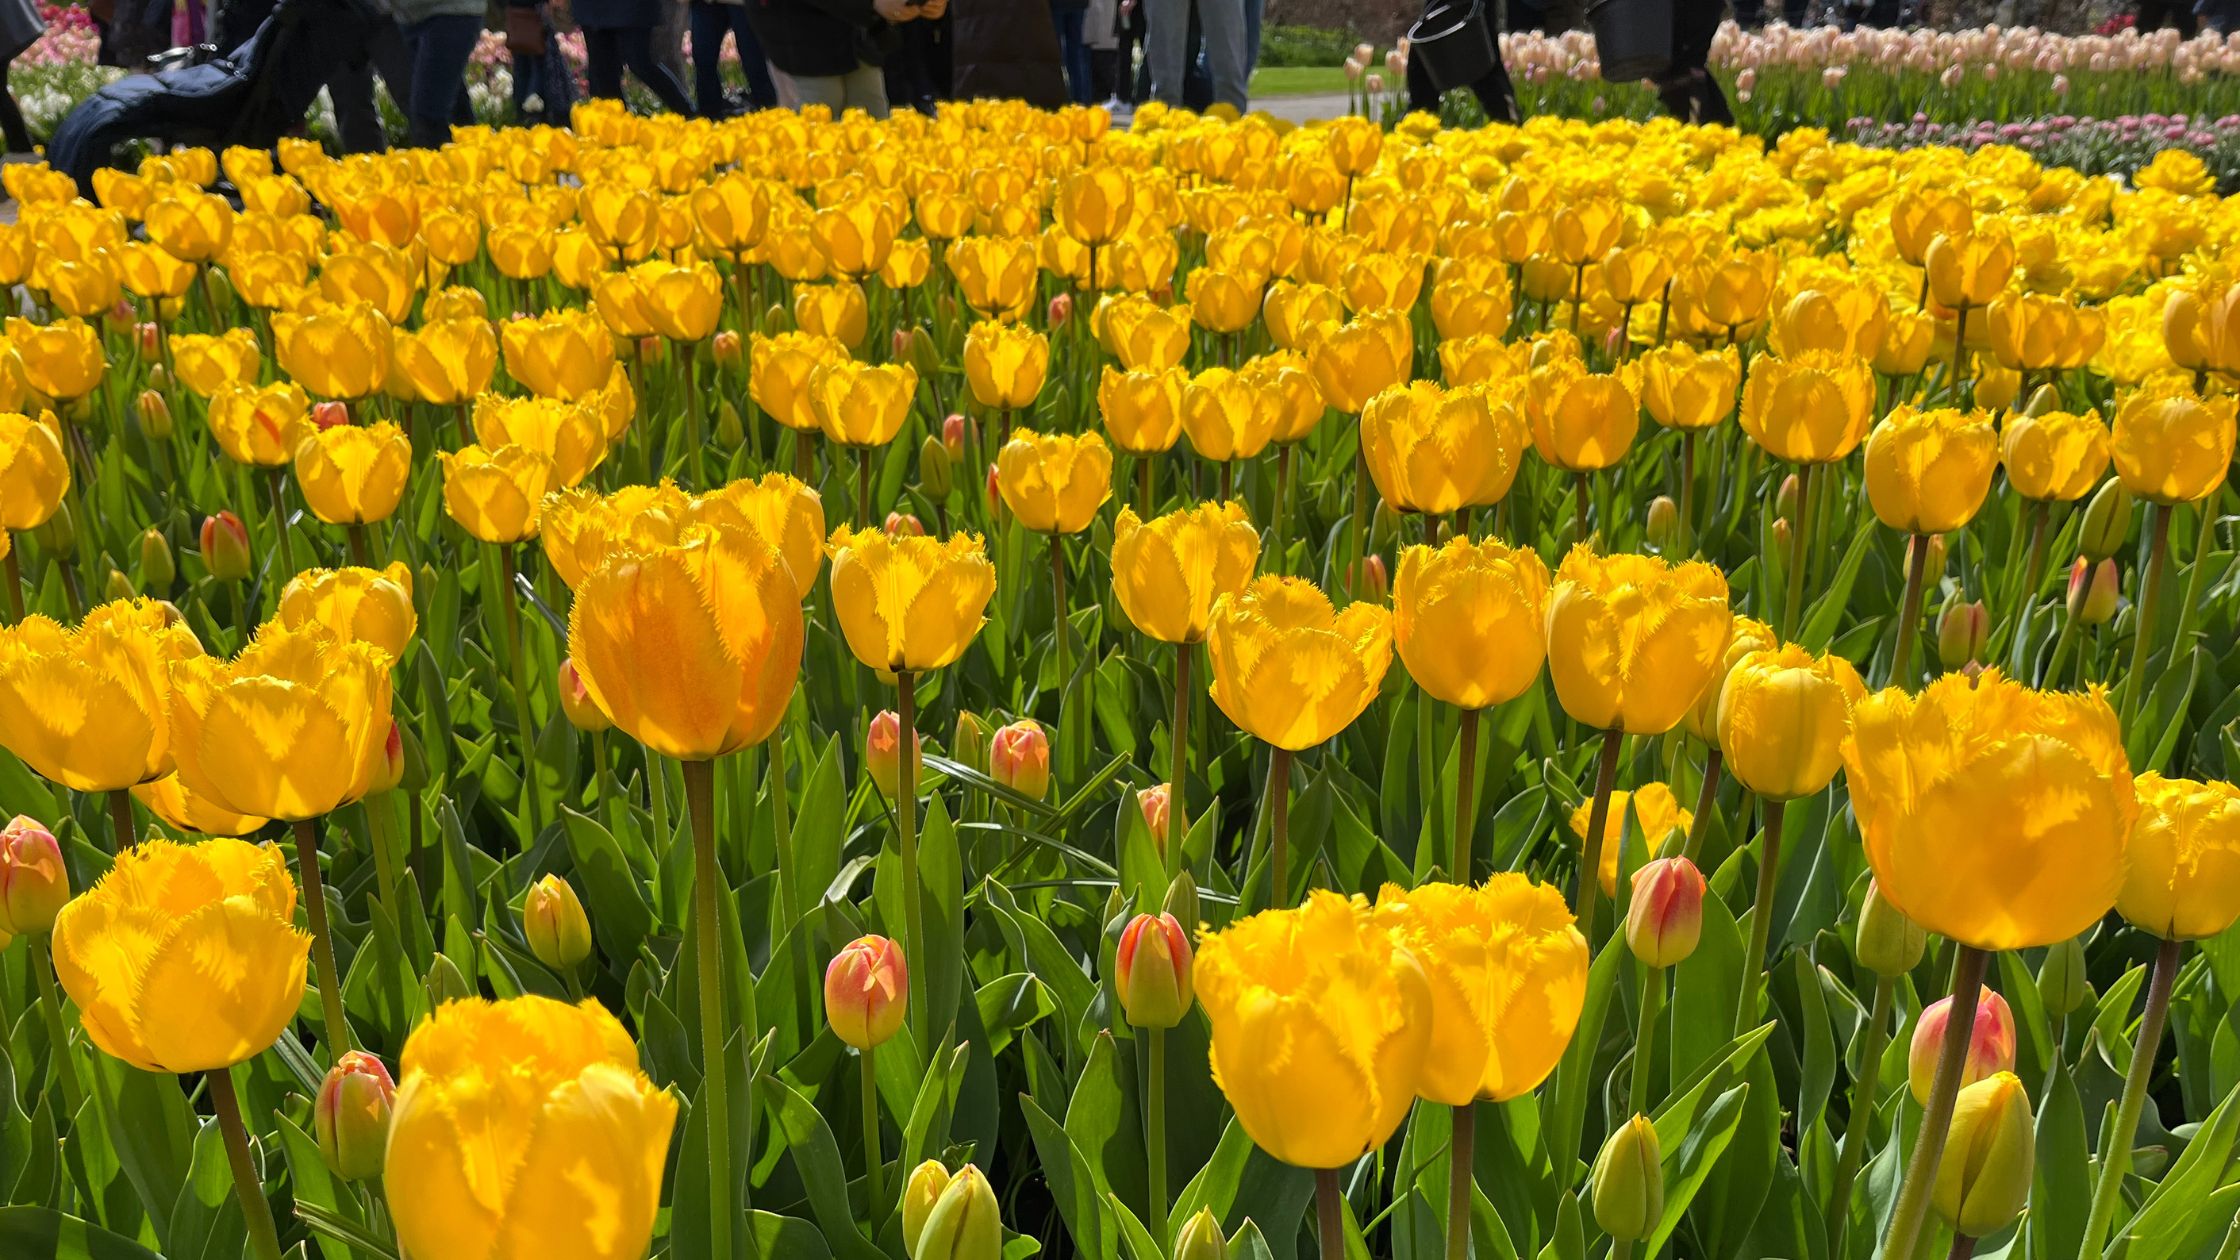 Yellow tulips en-masse